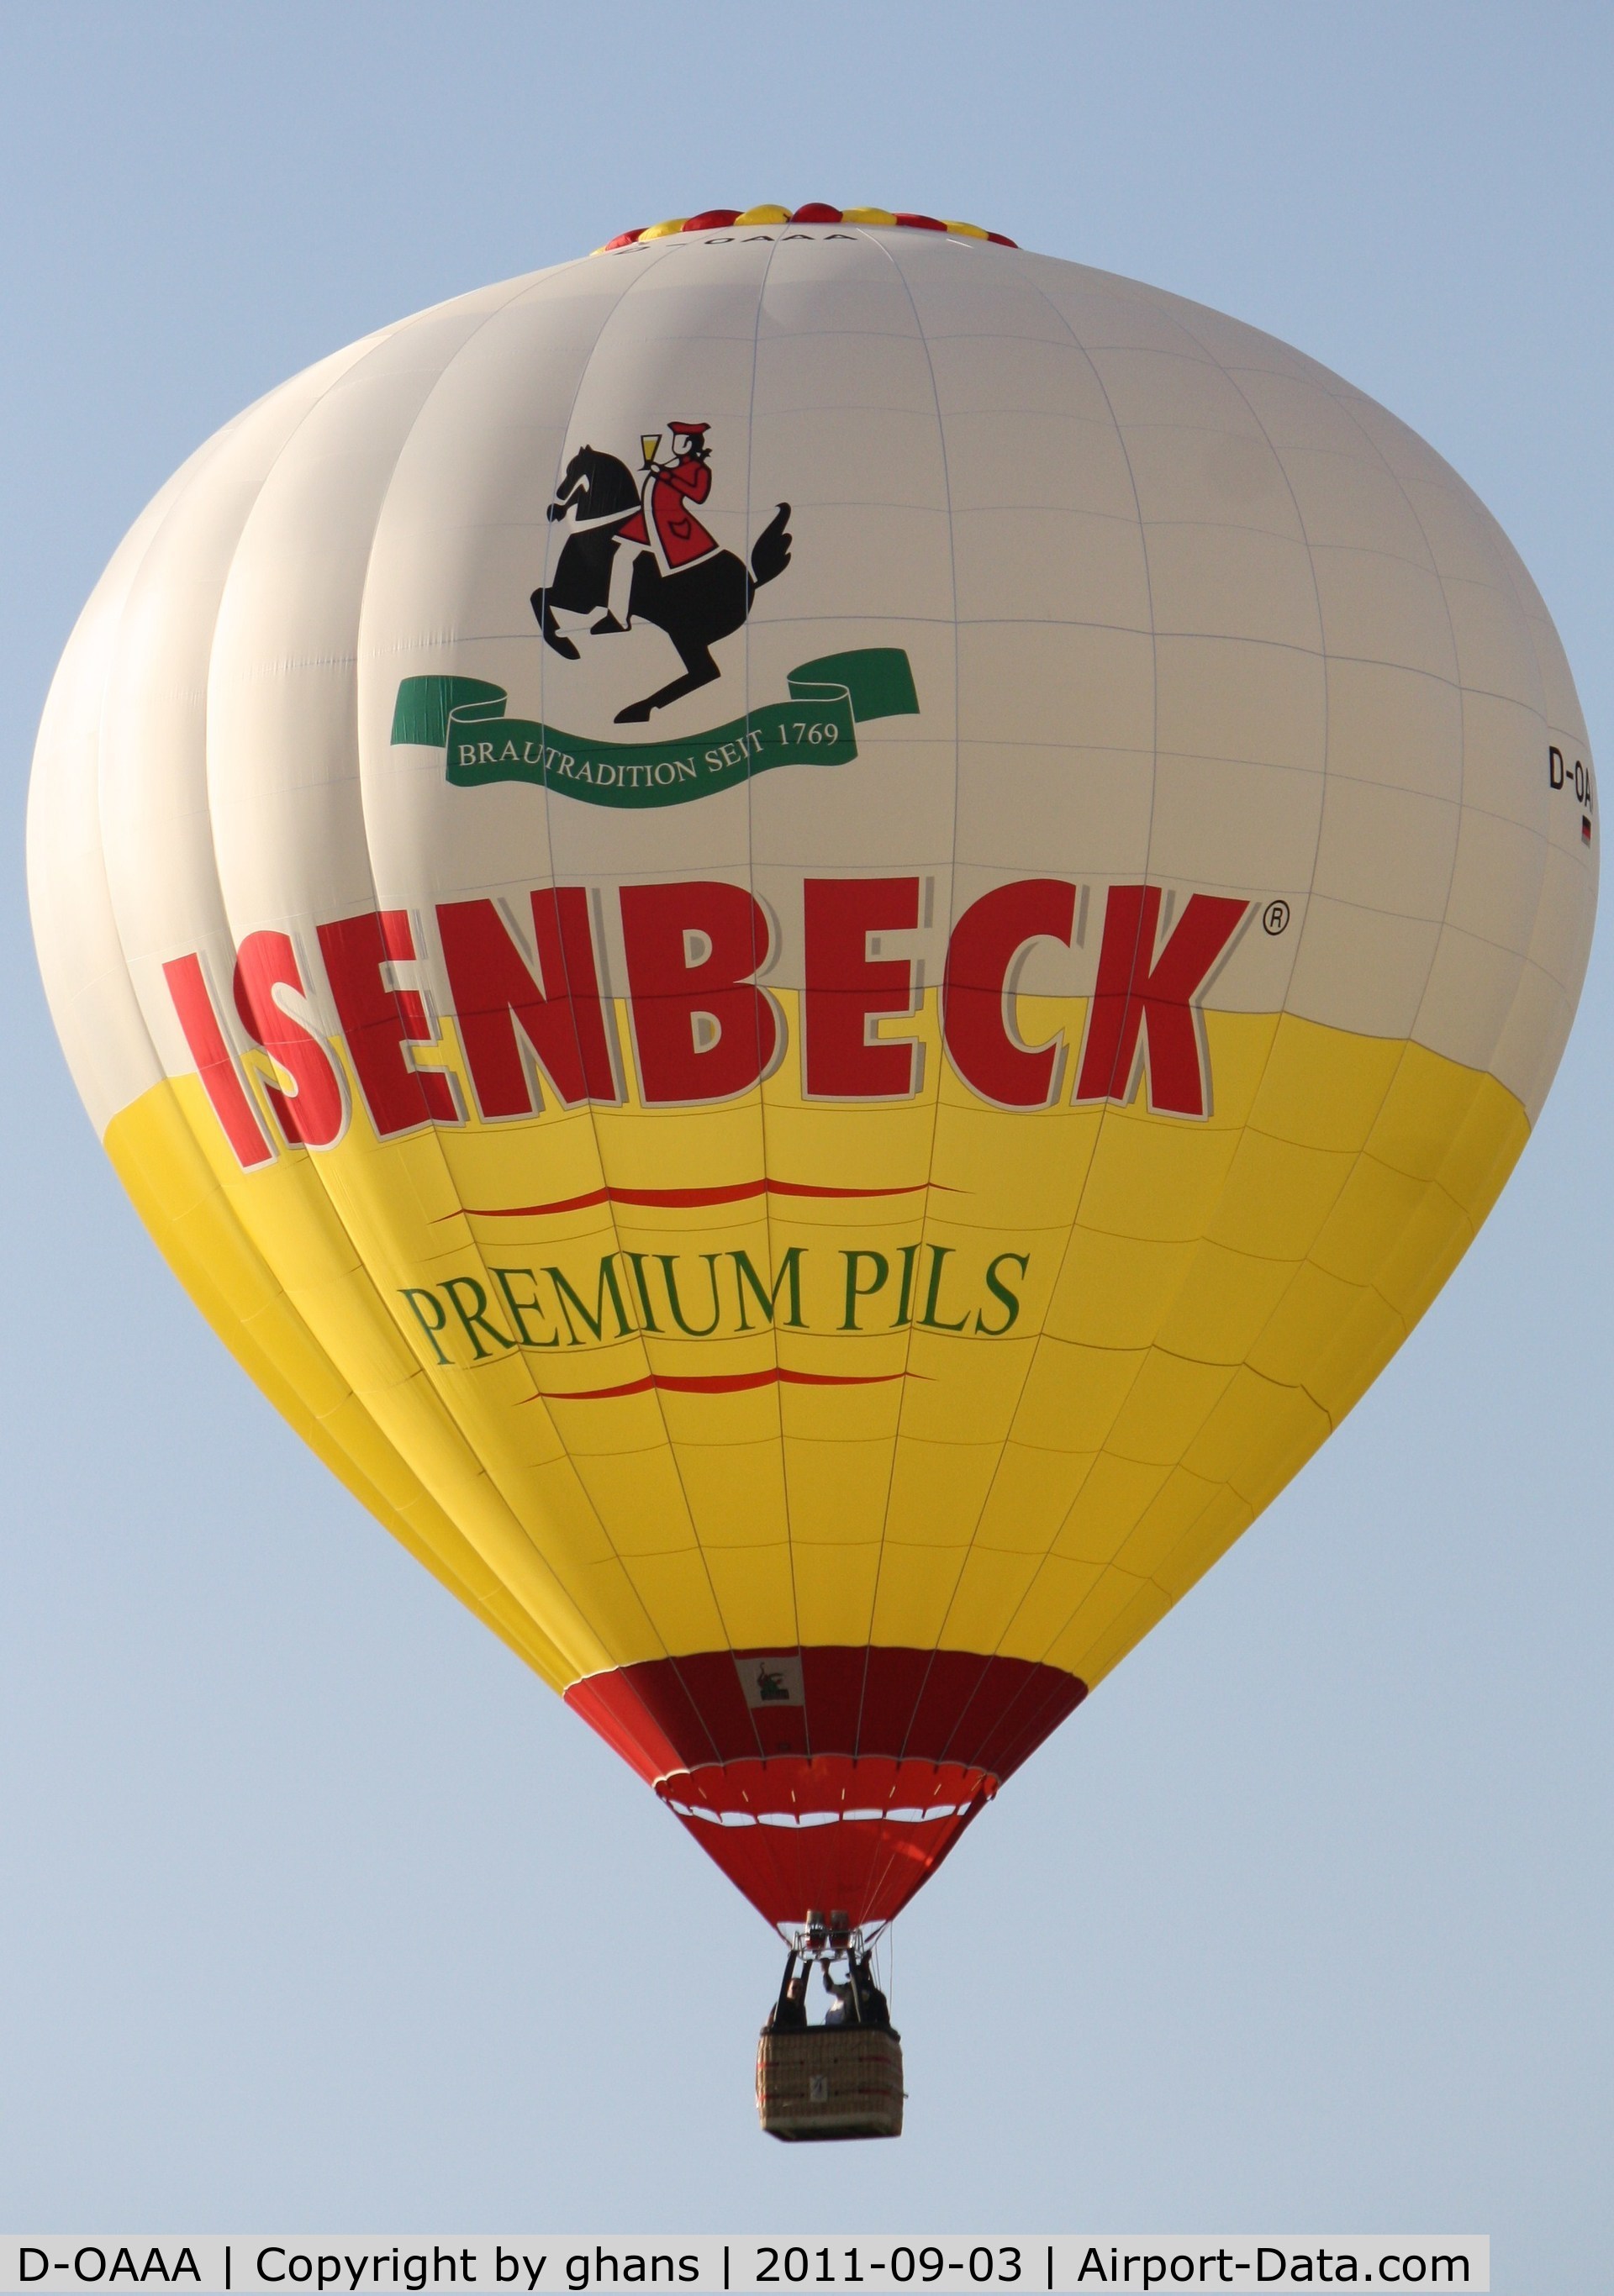 D-OAAA, 2004 Schroeder Fire Balloons G C/N 1096, WIM 2011
'Isenbeck Premium Pils'